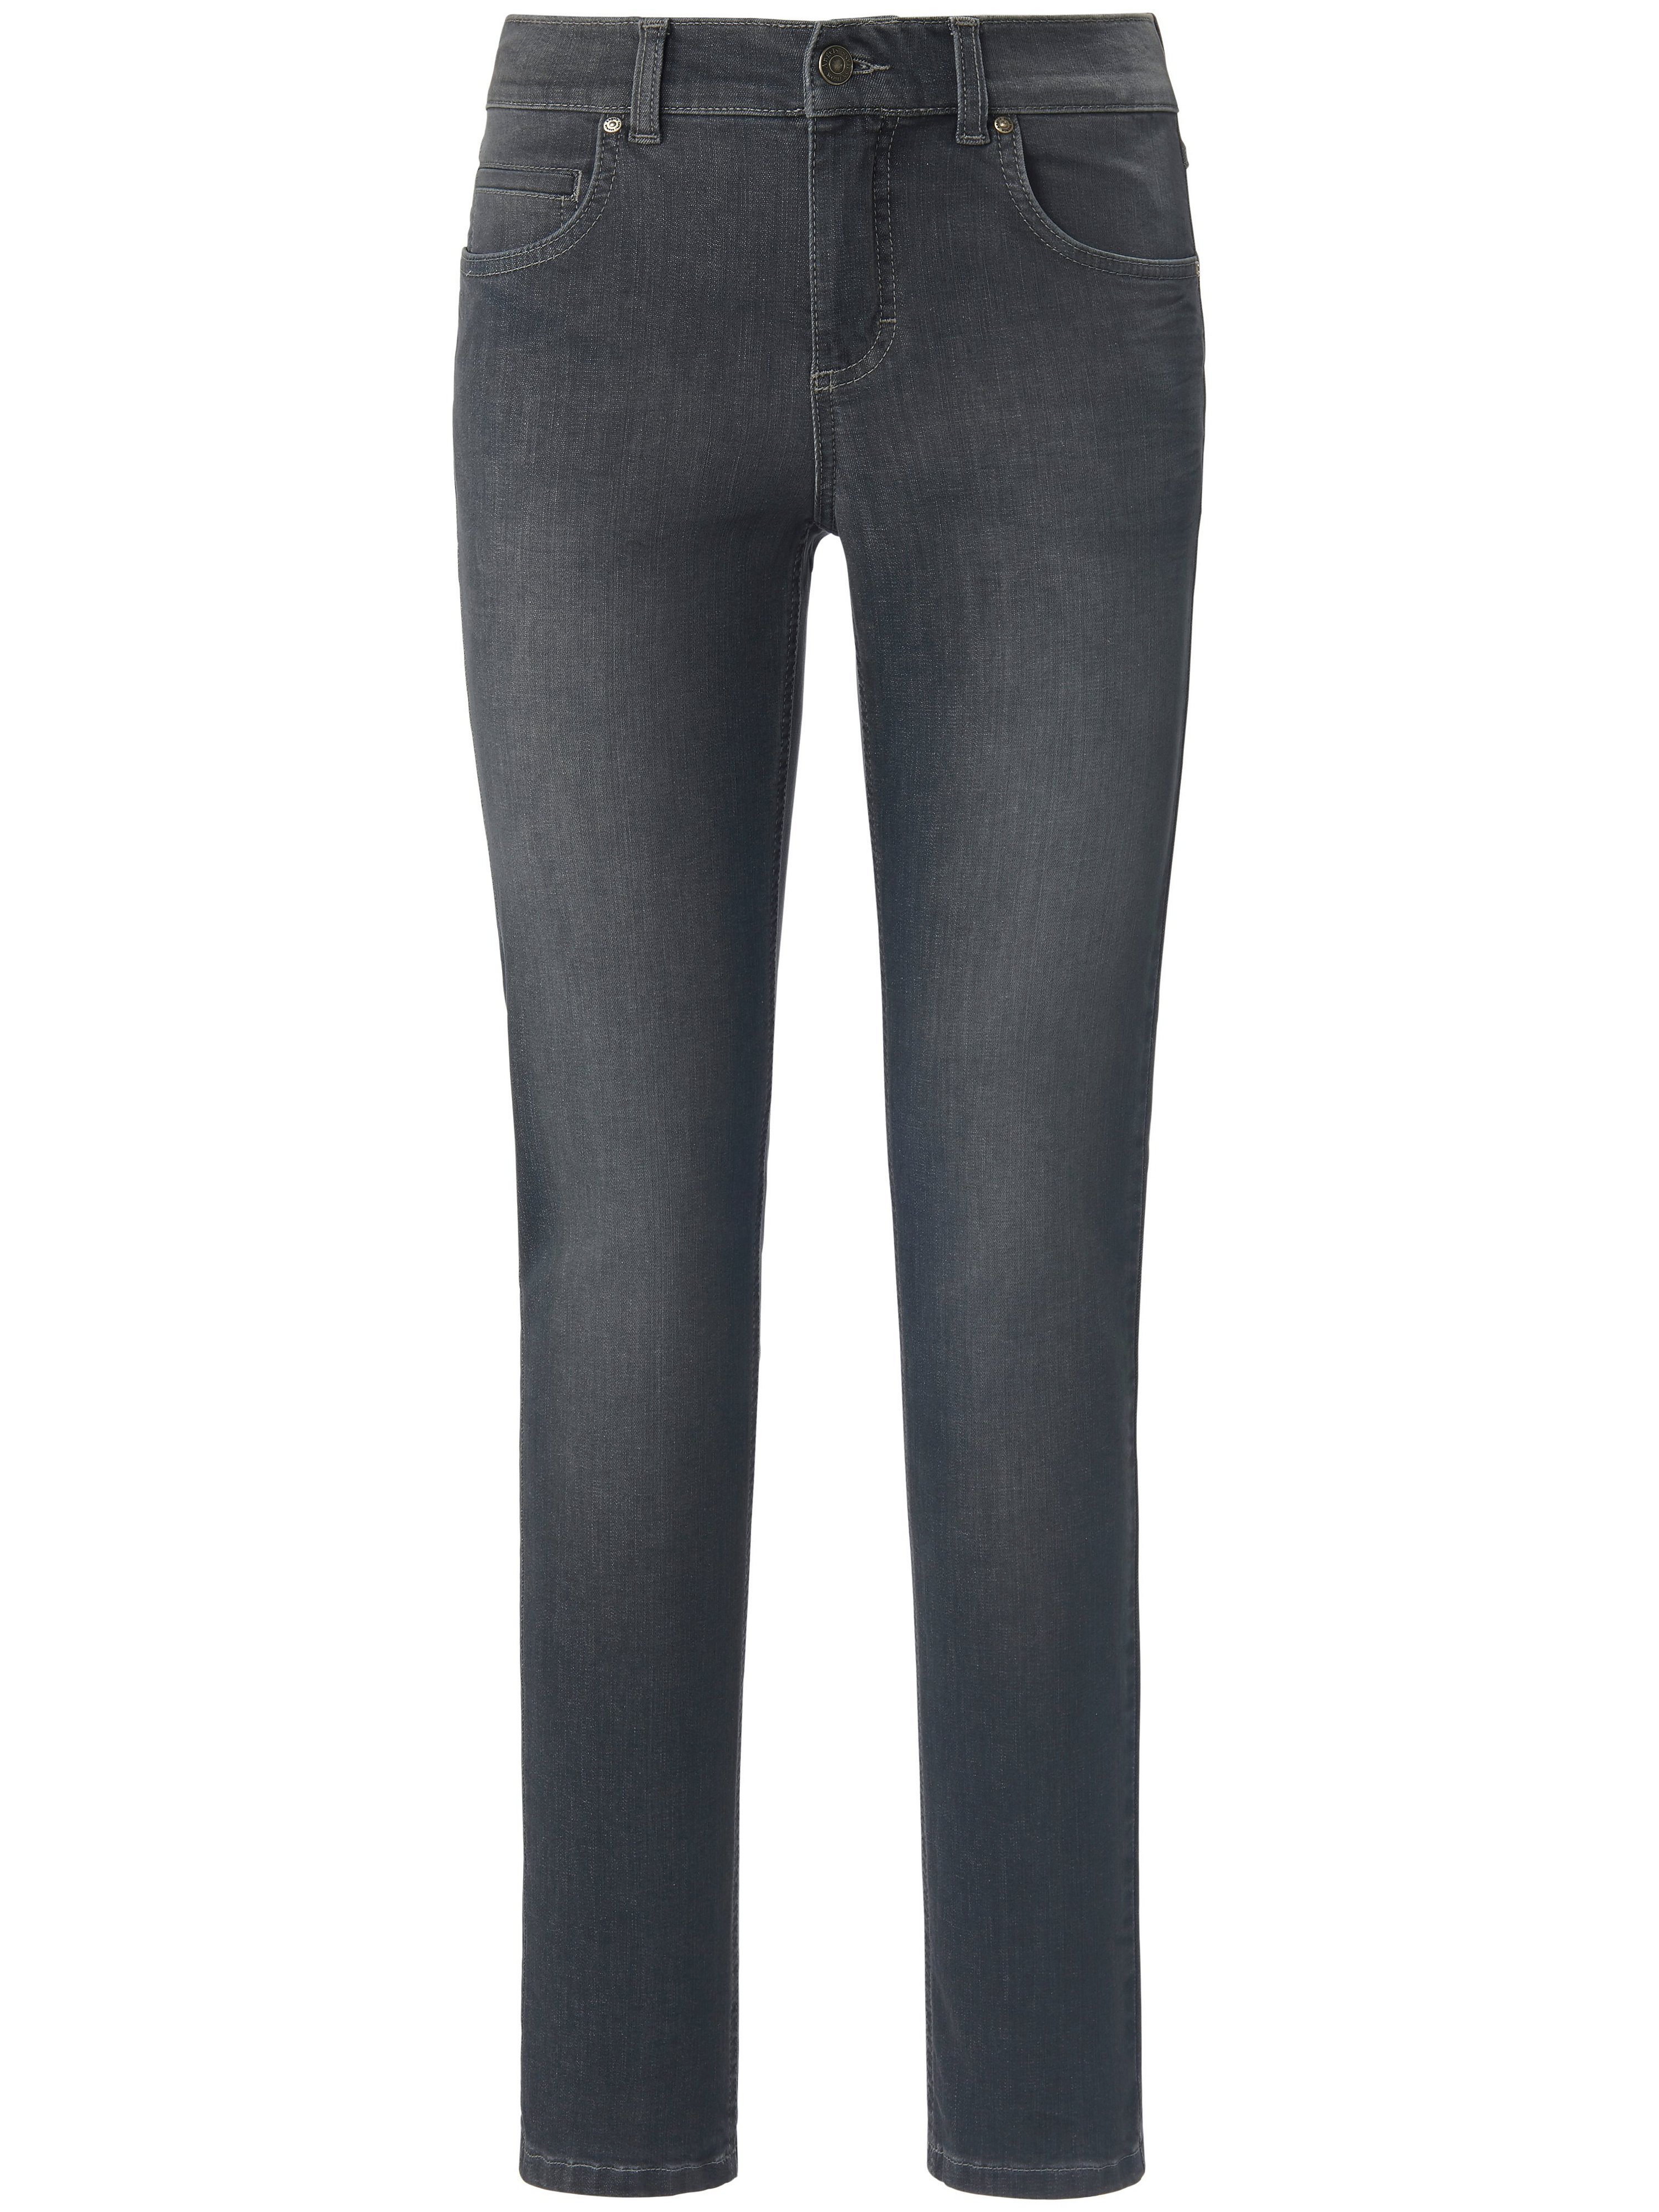 Le jean coupe Regular Fit modèle Cici Slim leg  ANGELS denim taille 23